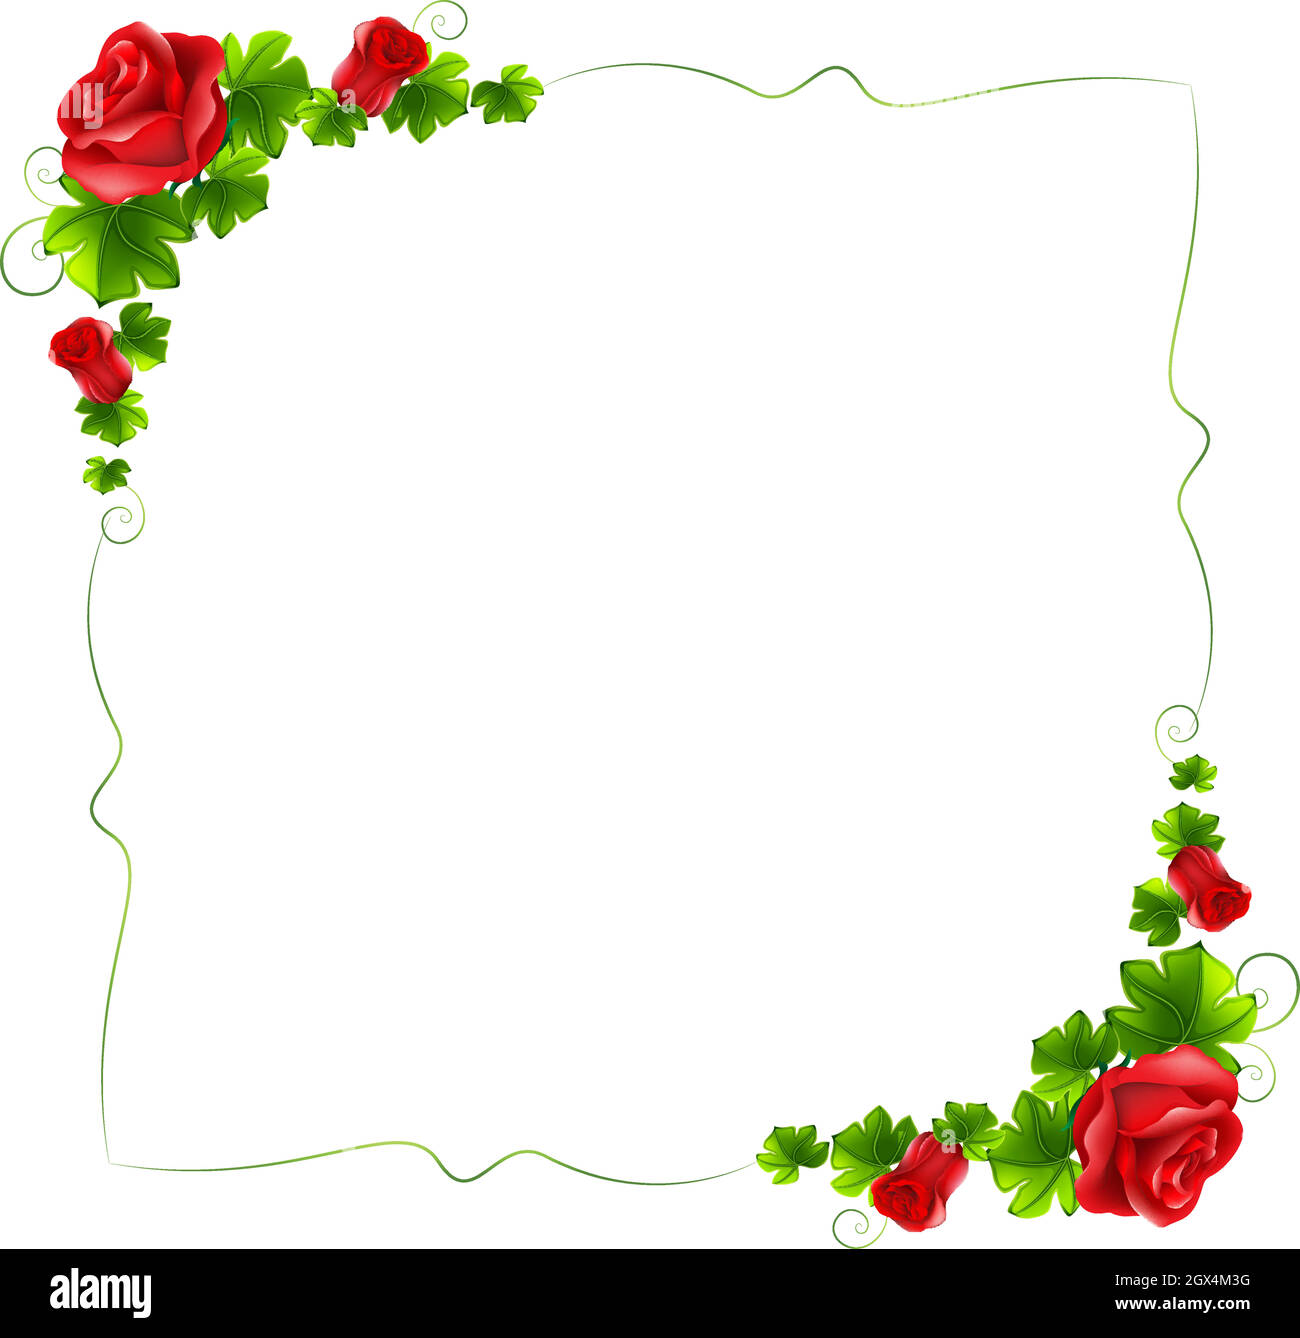 Ein floraler Rand mit roten Rosen Stock Vektor